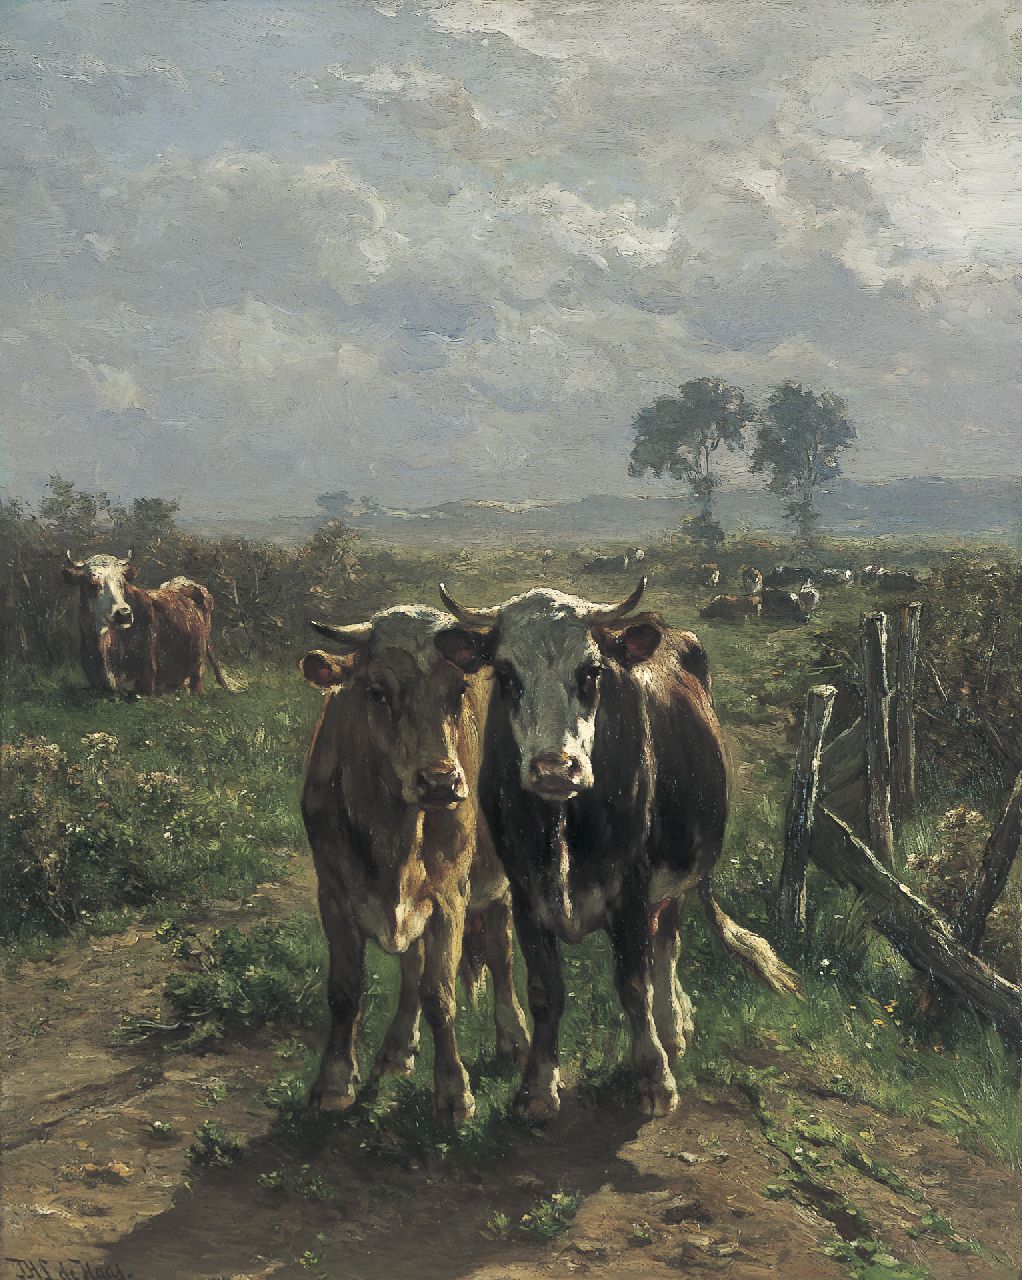 Haas J.H.L. de | Johannes Hubertus Leonardus de Haas, Koeien in zomers landschap, olieverf op paneel 80,8 x 64,5 cm, gesigneerd linksonder